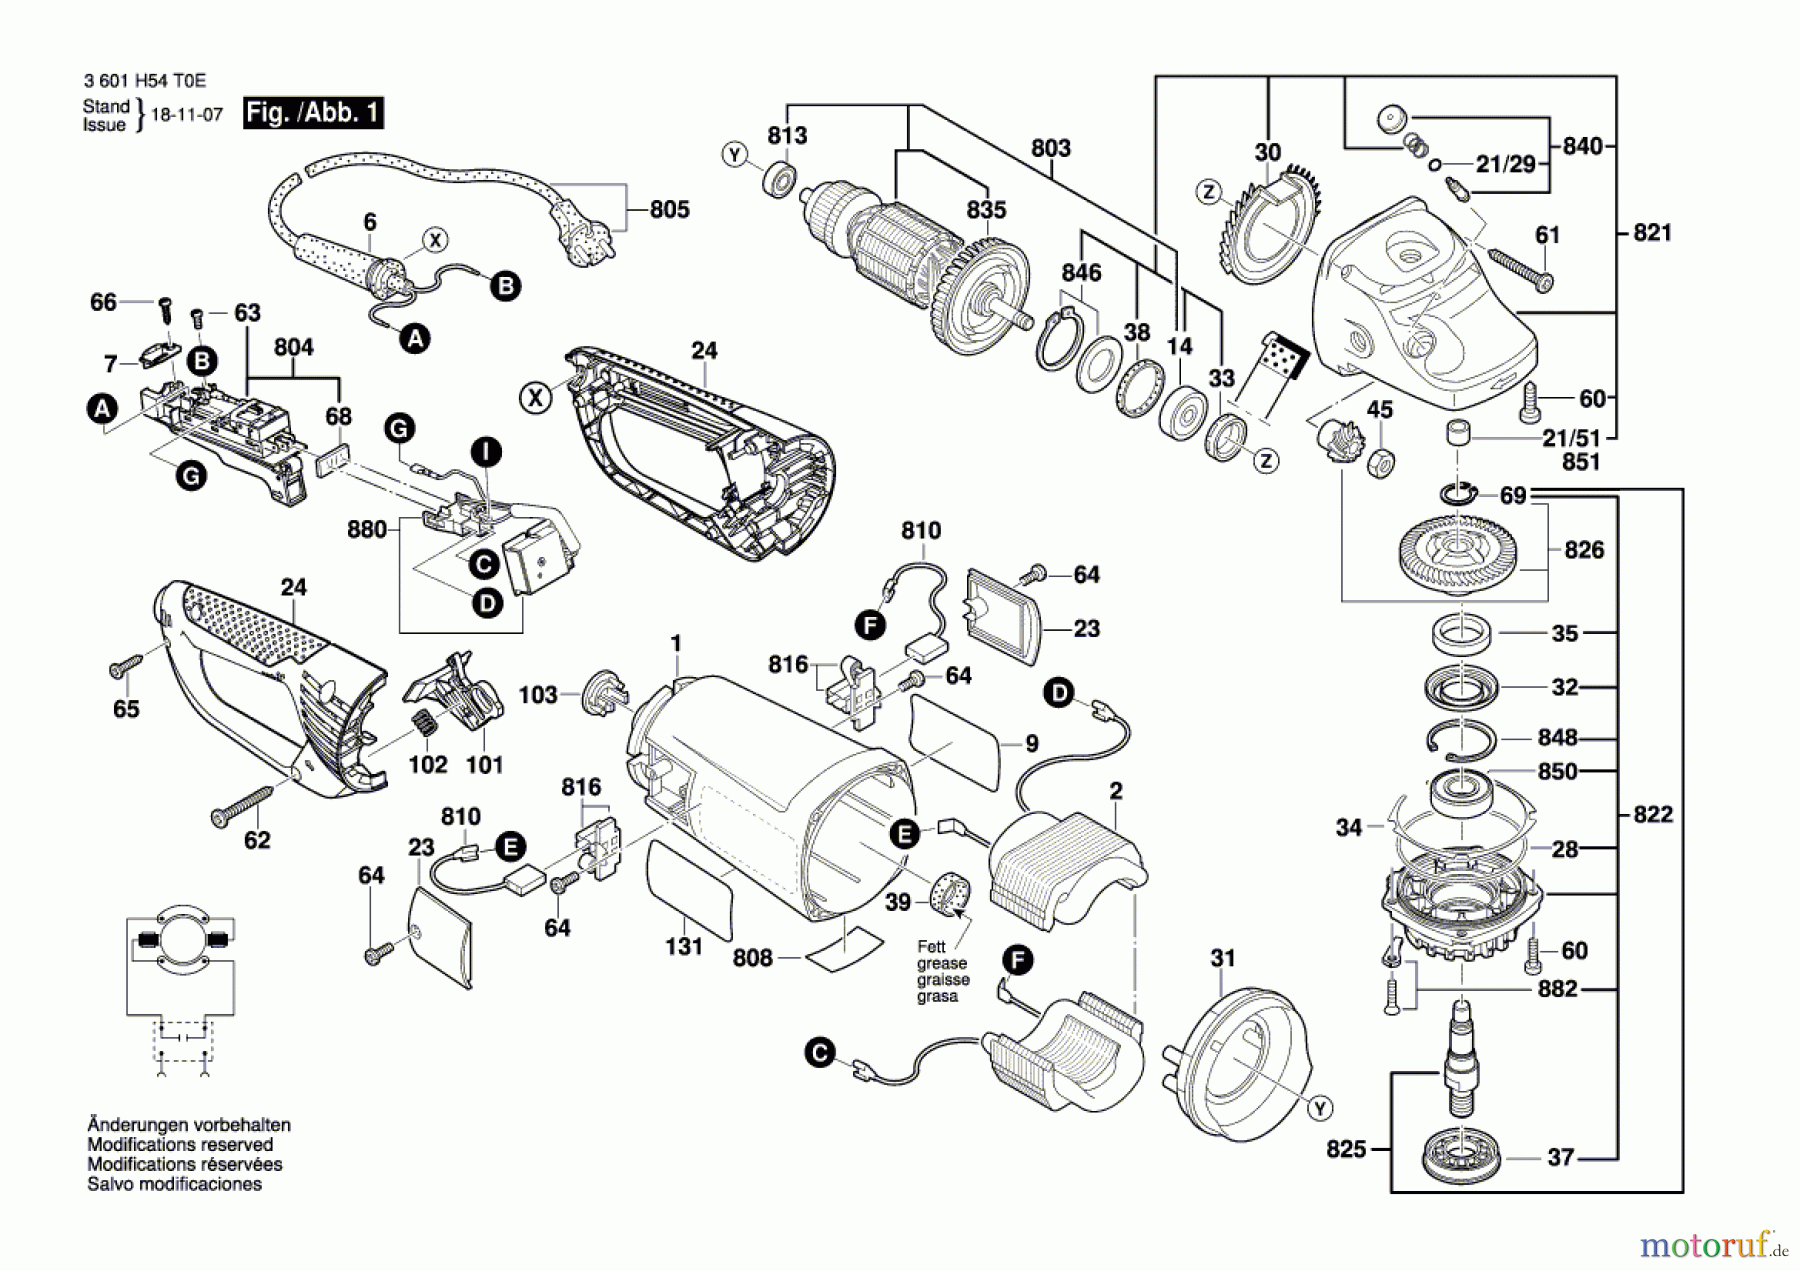  Bosch Werkzeug Winkelschleifer WKS 230 E Seite 1